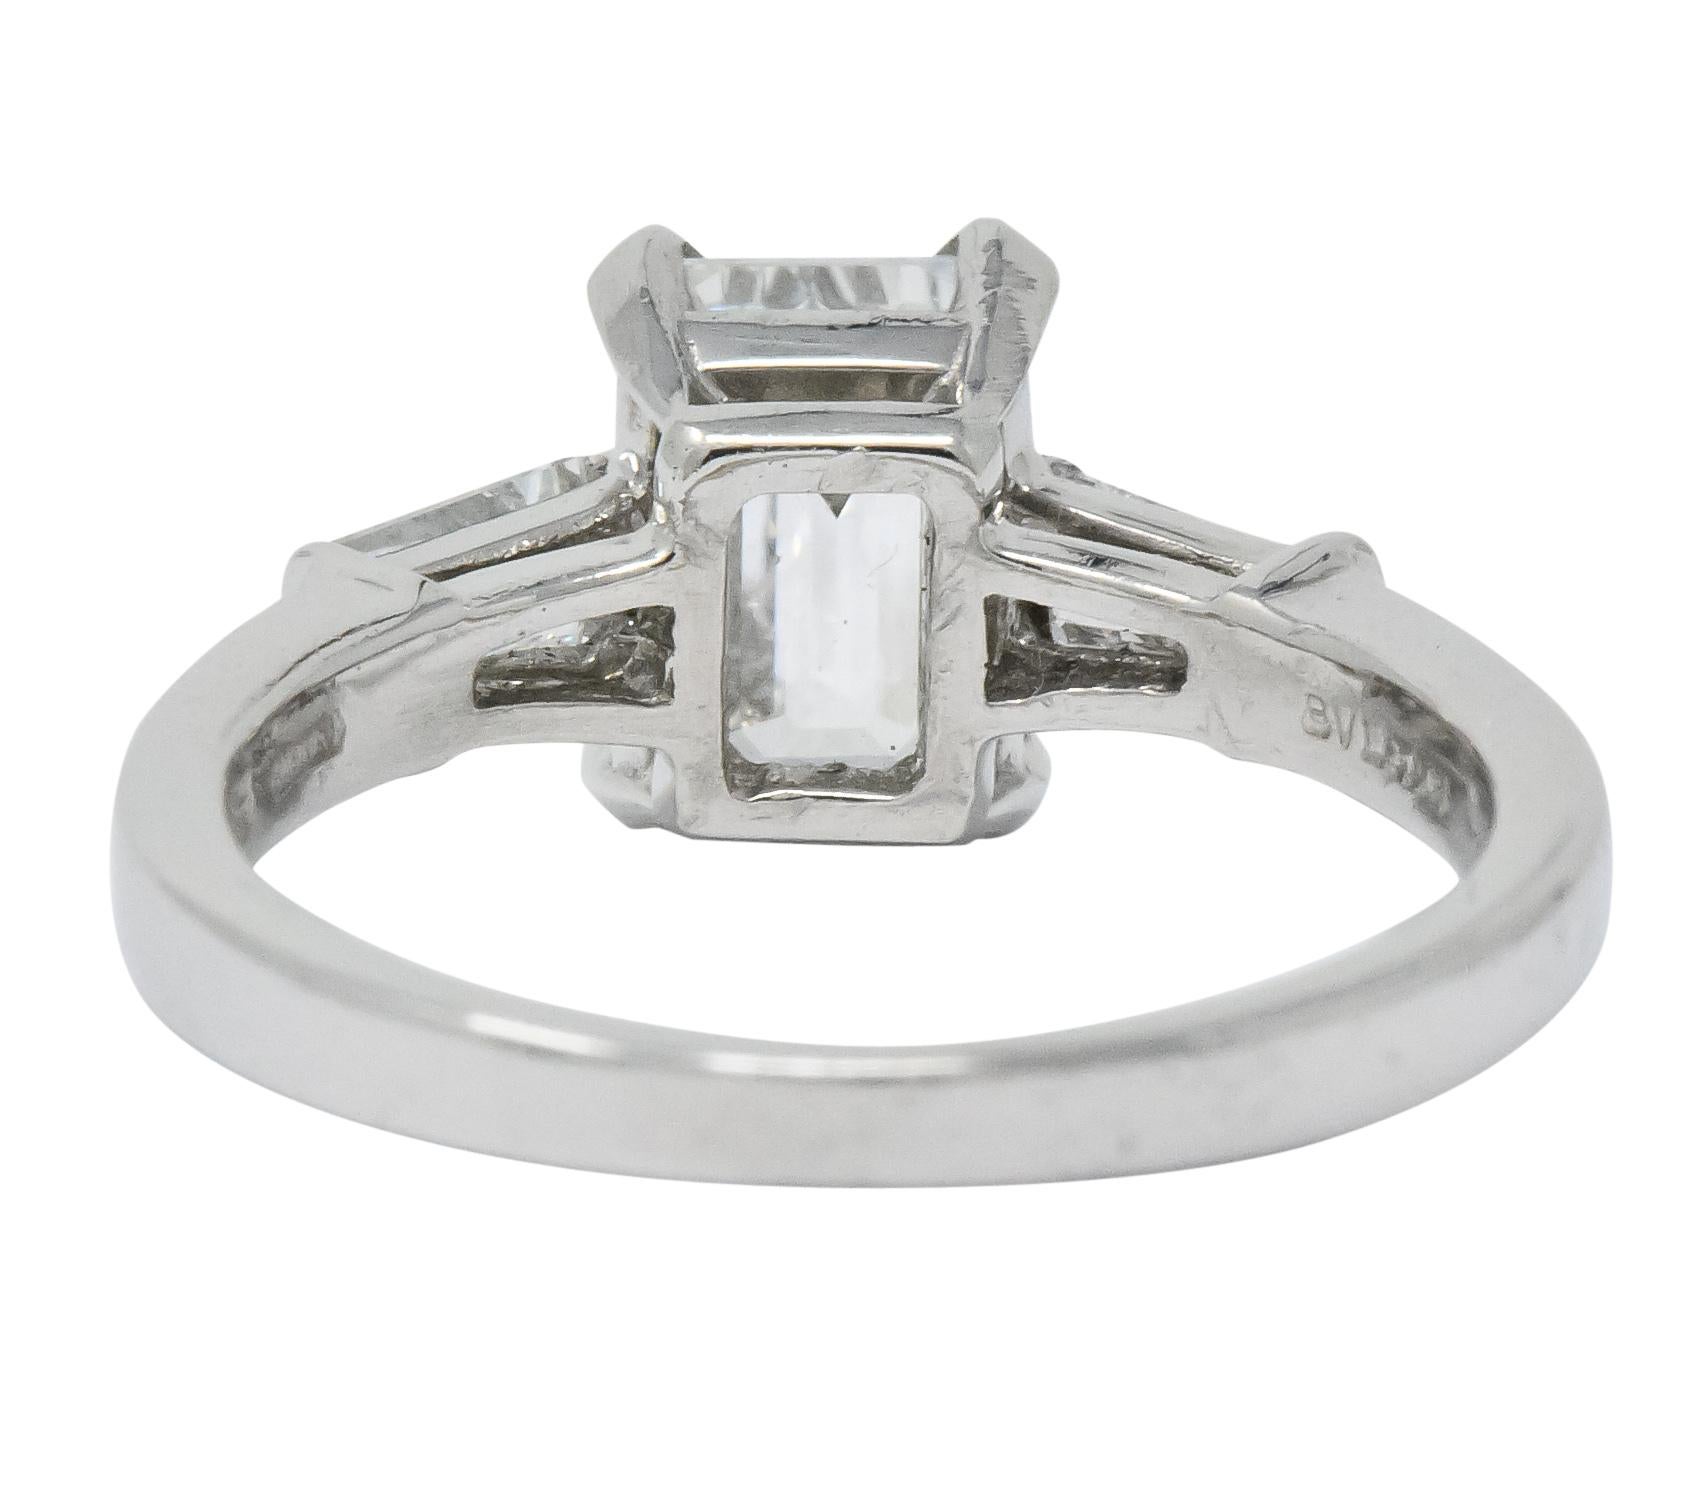 Bulgari 1.48 Carat Emerald Cut Diamond Platinum Engagement Ring GIA In Excellent Condition In Philadelphia, PA